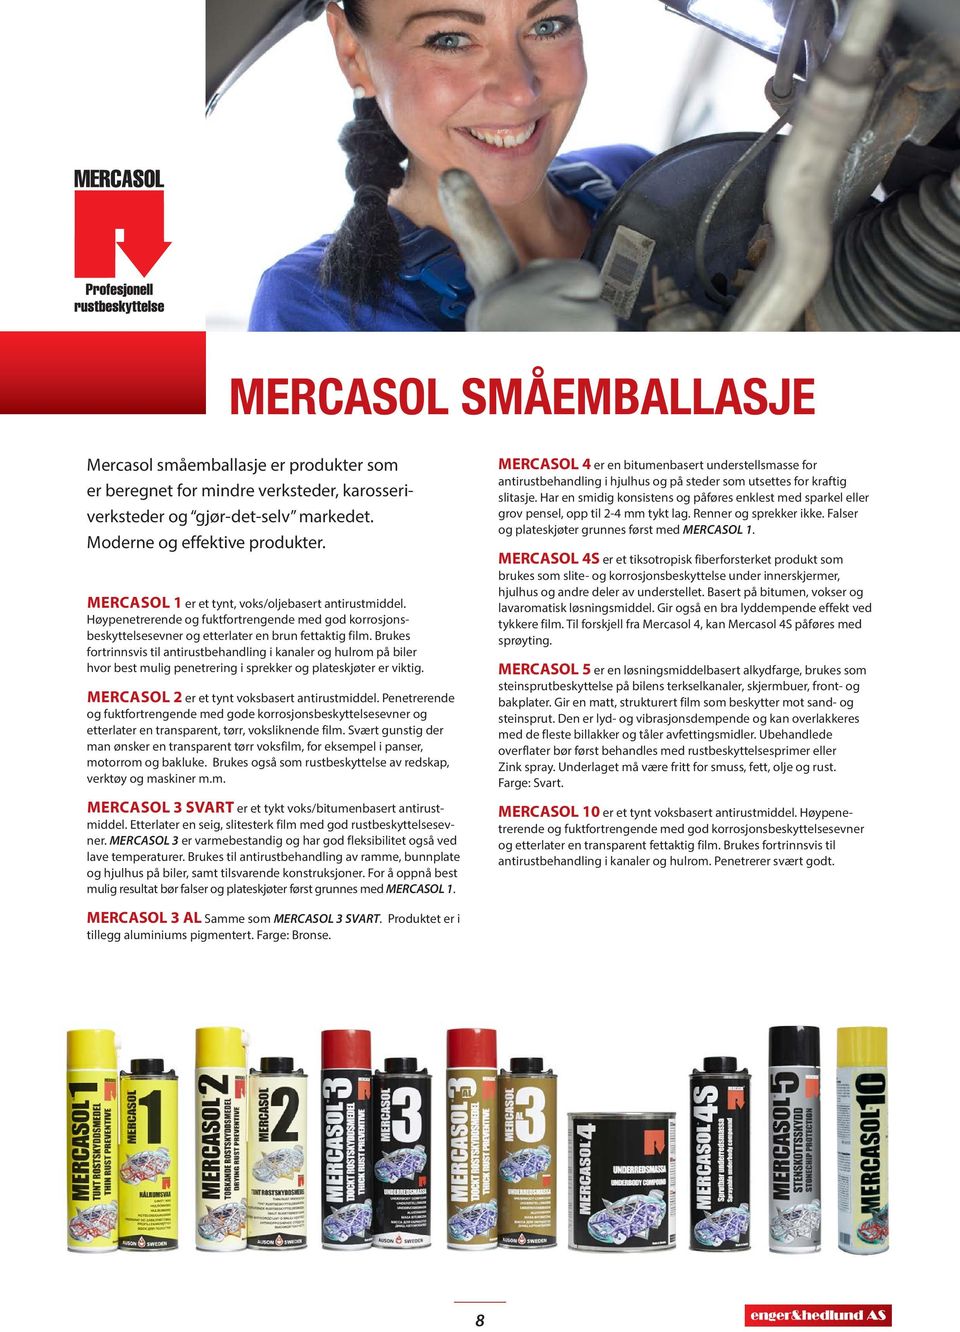 Brukes fortrinnsvis til antirustbehandling i kanaler og hulrom på biler hvor best mulig penetrering i sprekker og plateskjøter er viktig. MERCASOL 2 er et tynt voksbasert antirustmiddel.